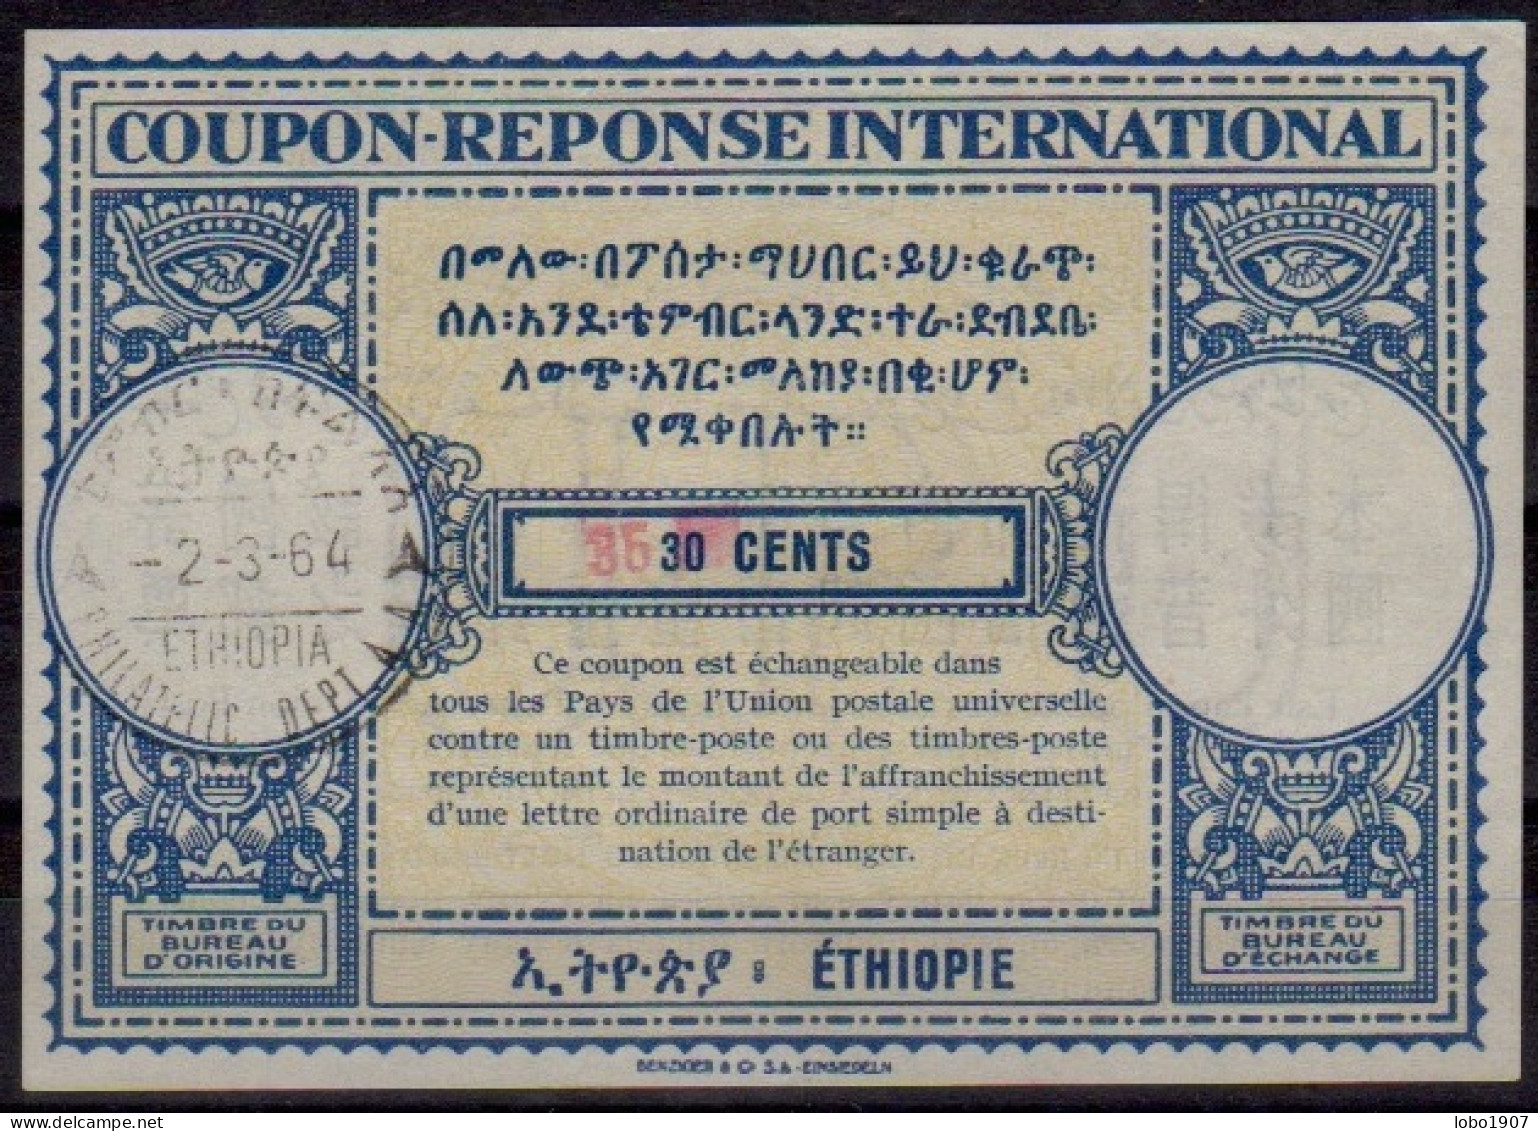 ÉTHIOPIE ETHIOPIA  Lo15  35 / 30 CENTS  International Reply Coupon Reponse Antwortschein IRC IAS  ADDIS ABABA 02.03.64 - Ethiopie